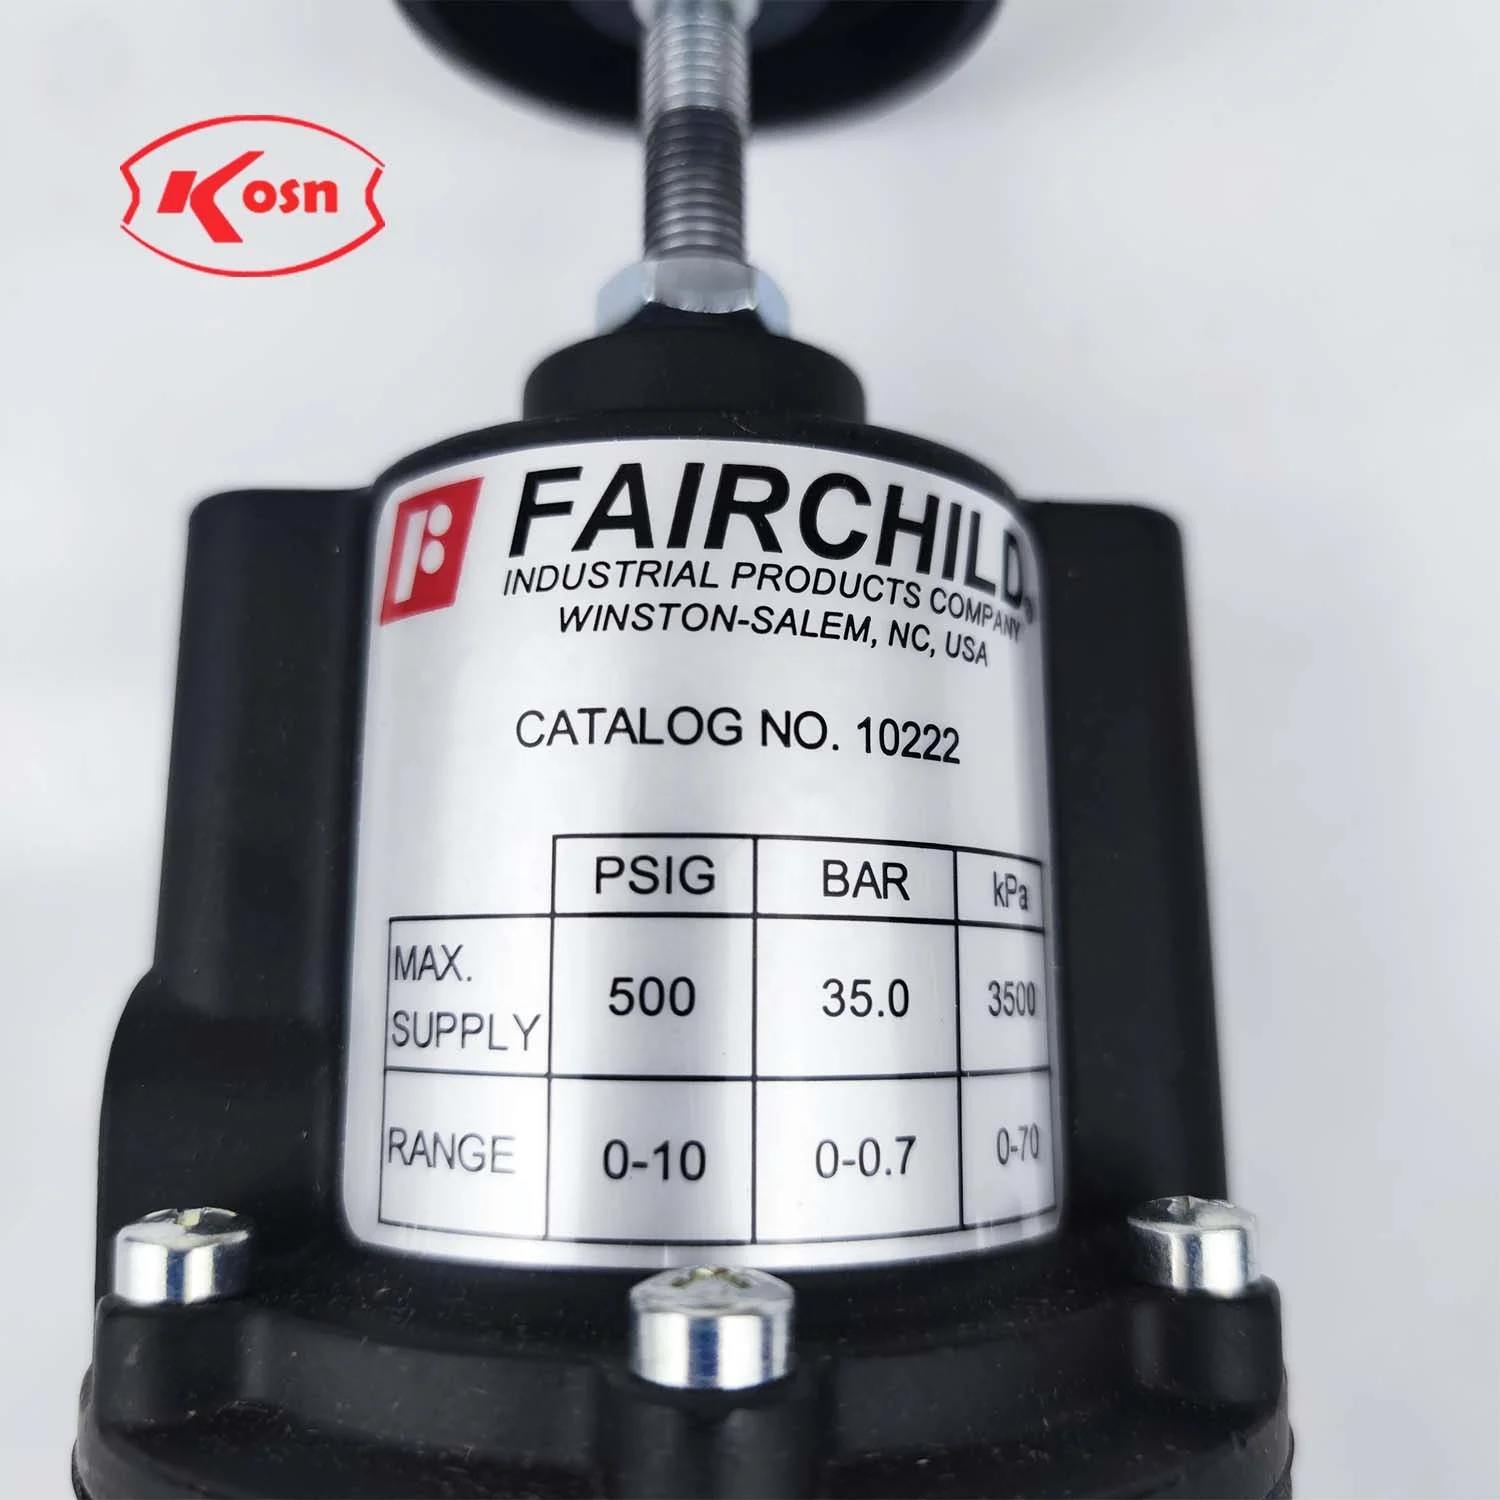 Оригинальный бренд США Fairchild 10222 Средне-низкое давление, высокоточный фильтр, клапан-регулятор давления Изображение 1